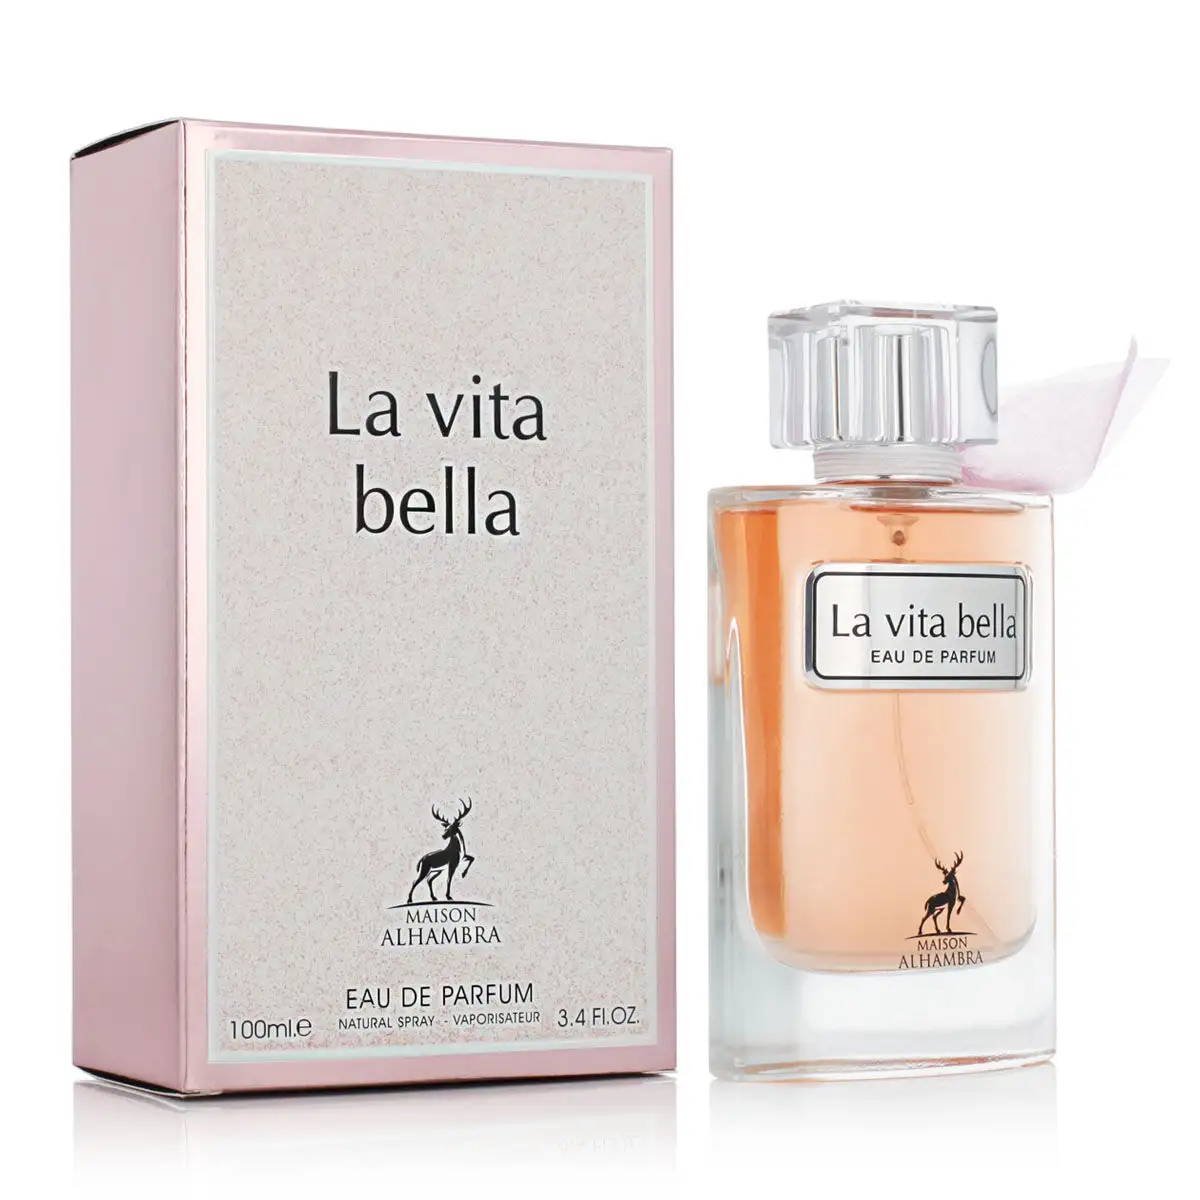 Parfum femme maison alhambra edp la vita bella 100 ml_2235. DIAYTAR SENEGAL - Où Choisir Devient une Expérience Personnalisée. Explorez notre boutique en ligne pour découvrir des produits qui s'adaptent à votre style et à votre essence.